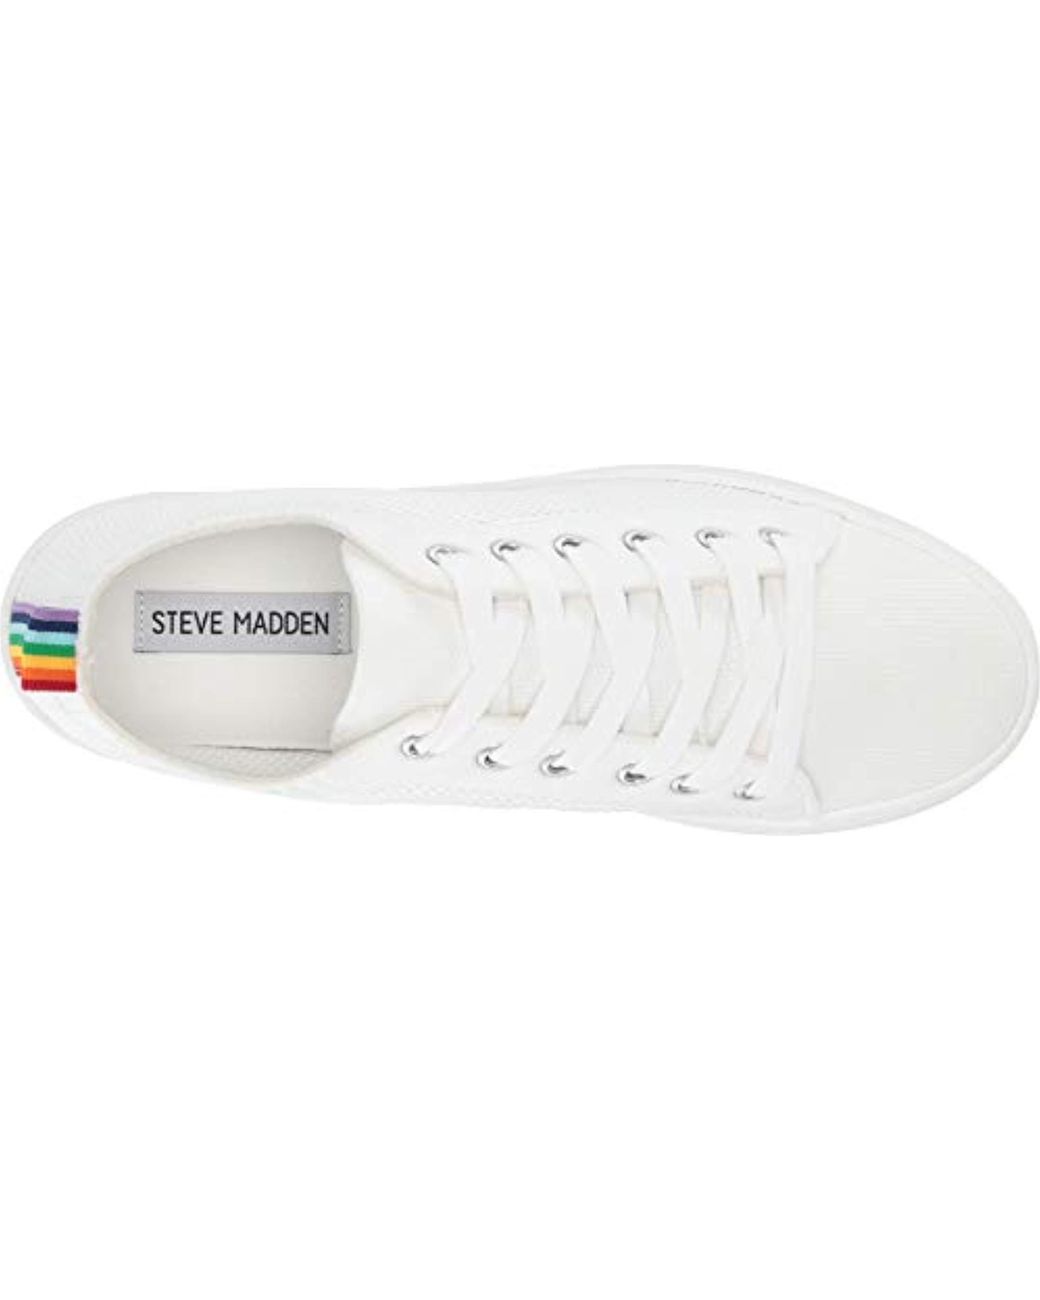 Steve Madden Bardo Sneaker in White | Lyst